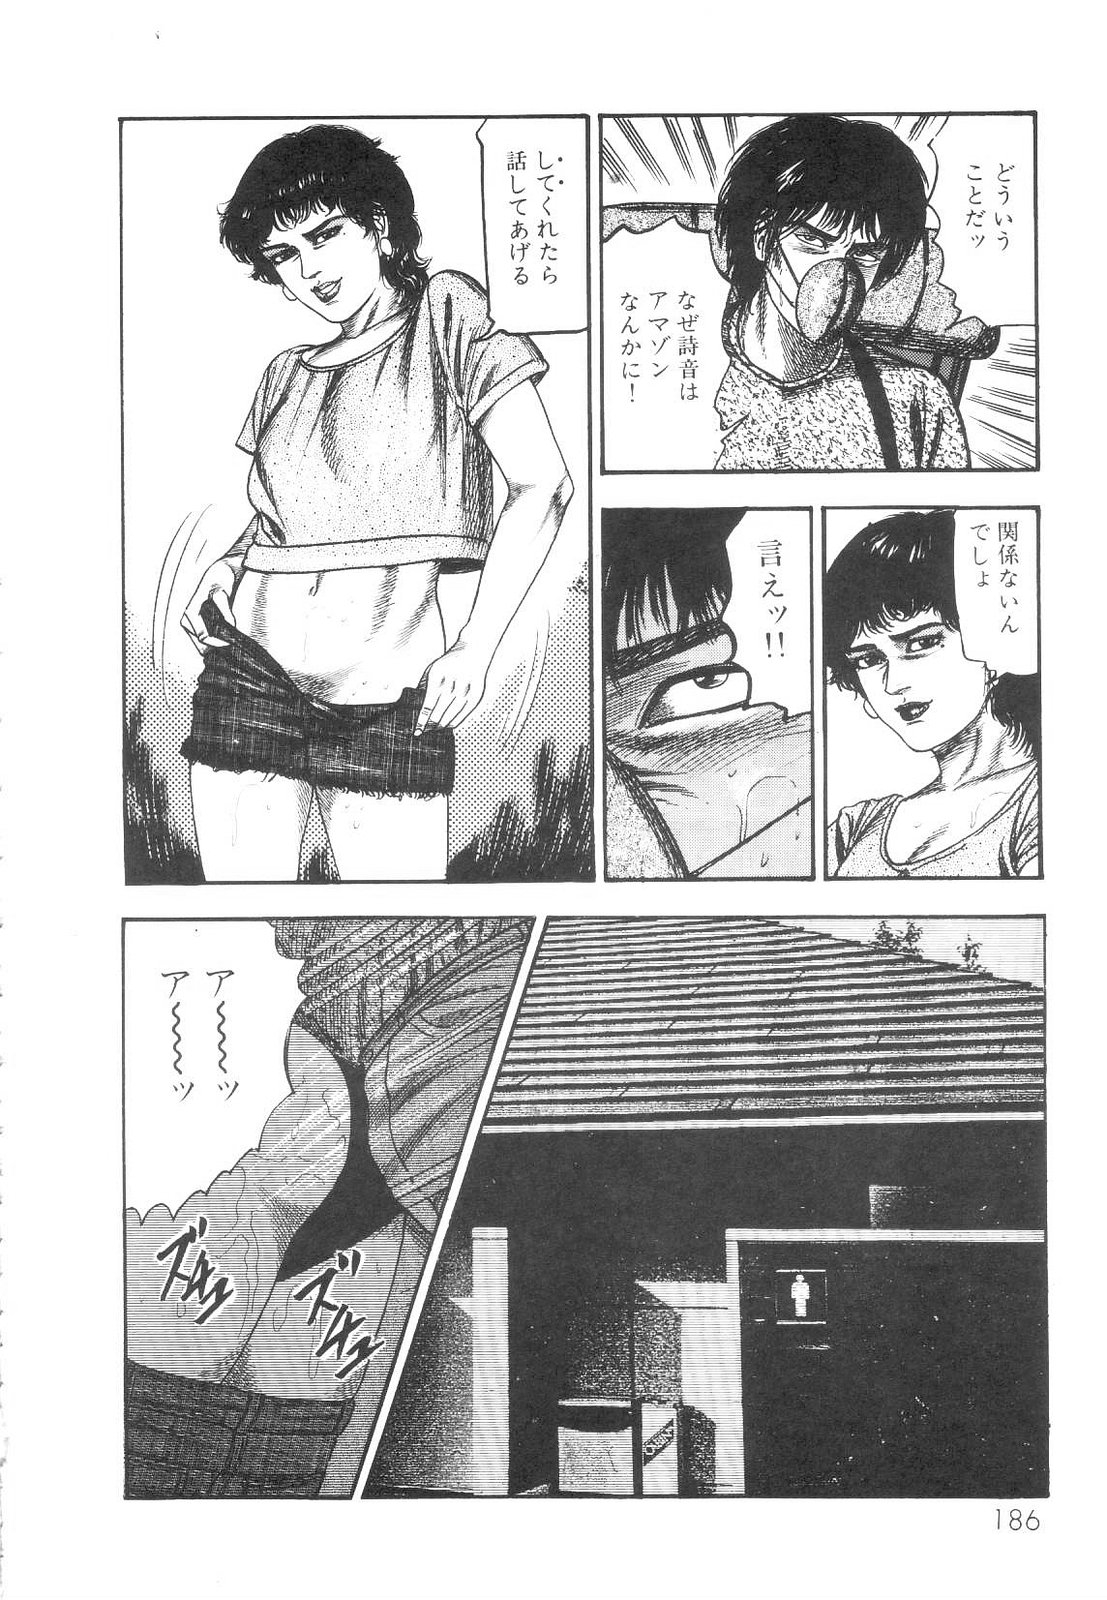 [Sanjou Tomomi] Shiro no Mokushiroku Vol. 1 - Sei Shojo Shion no Shou 186